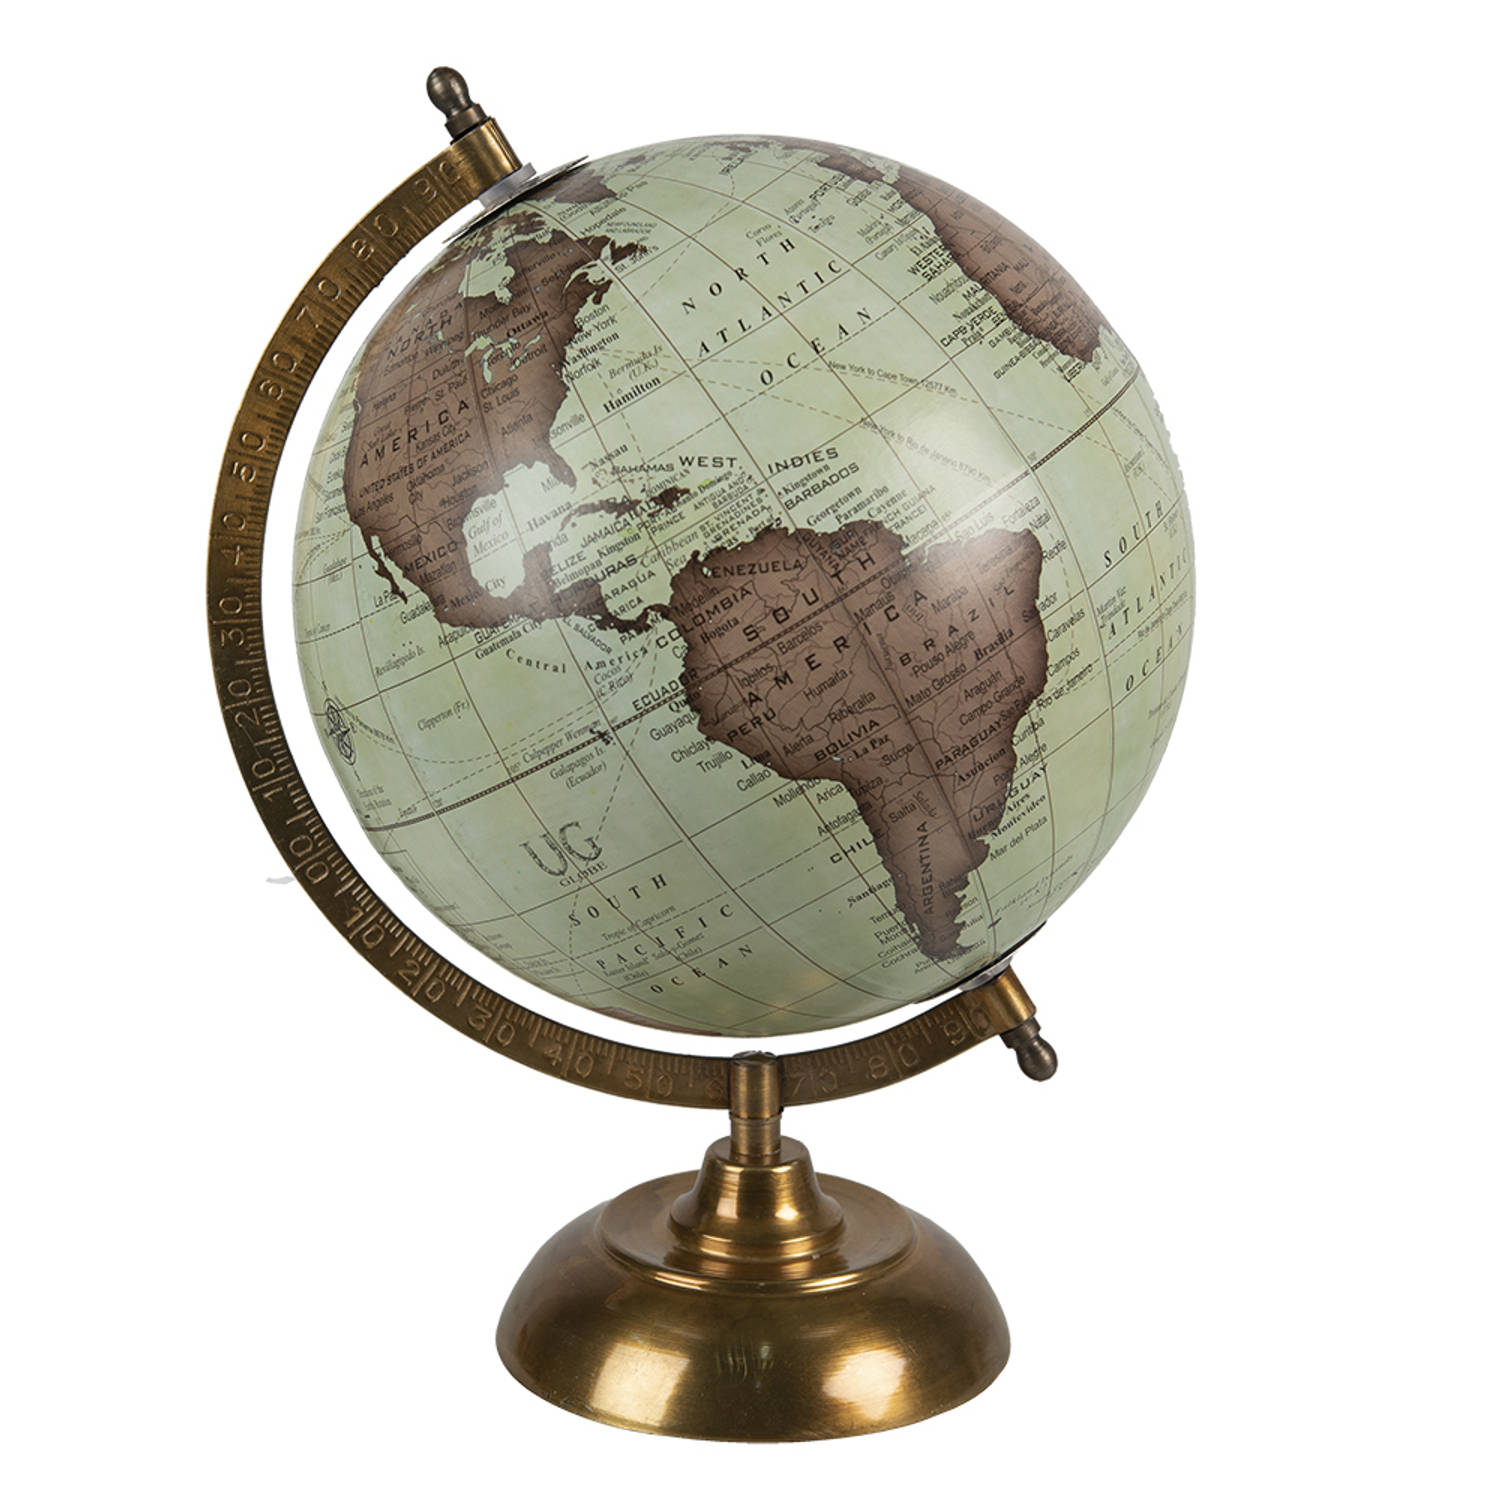 HAES DECO - Decoratieve Wereldbol met metalen koperkleurige voet - formaat 22x33cm - kleuren Bruin / Groen - Vintage Wereldbol, Globe, Aarbol